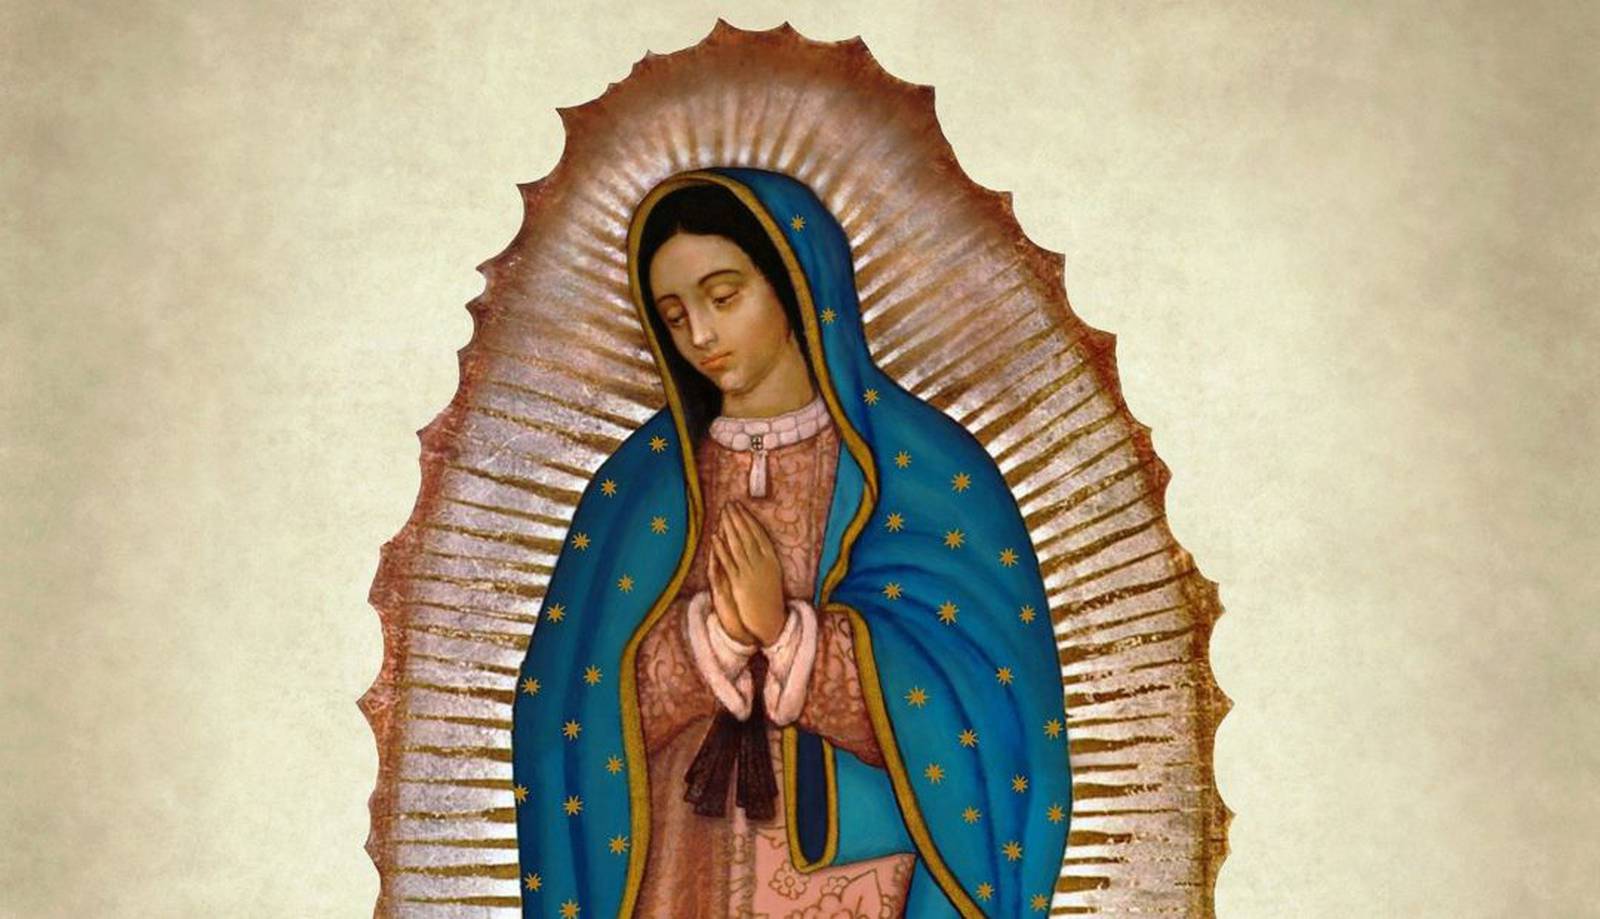 Por qué se celebra el día de la virgen de Guadalupe?